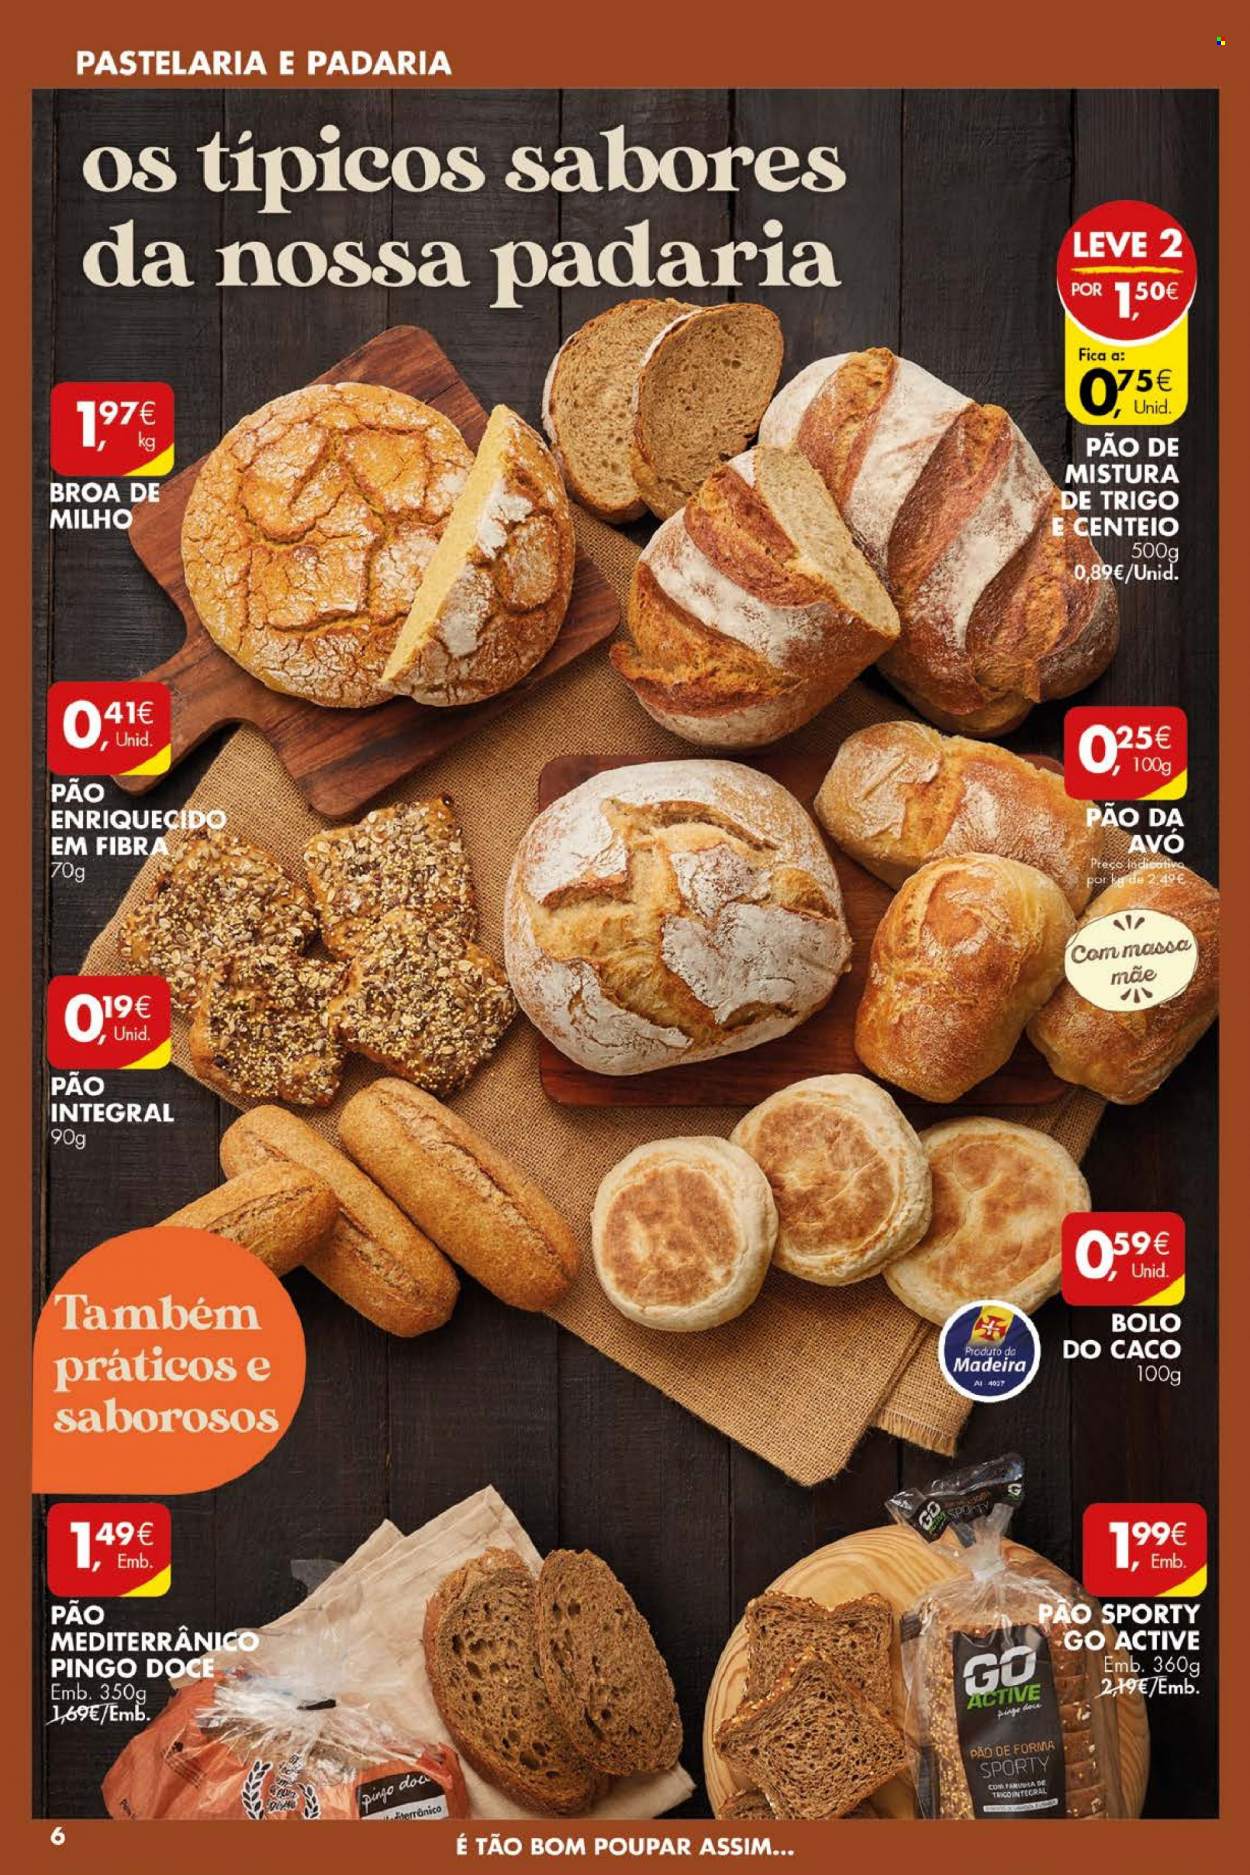 thumbnail - Folheto Pingo Doce - 10.5.2022 - 16.5.2022 - Produtos em promoção - pão, pão de forma, broa de milho, Pão da Avó, bolo, bolo do caco. Página 6.